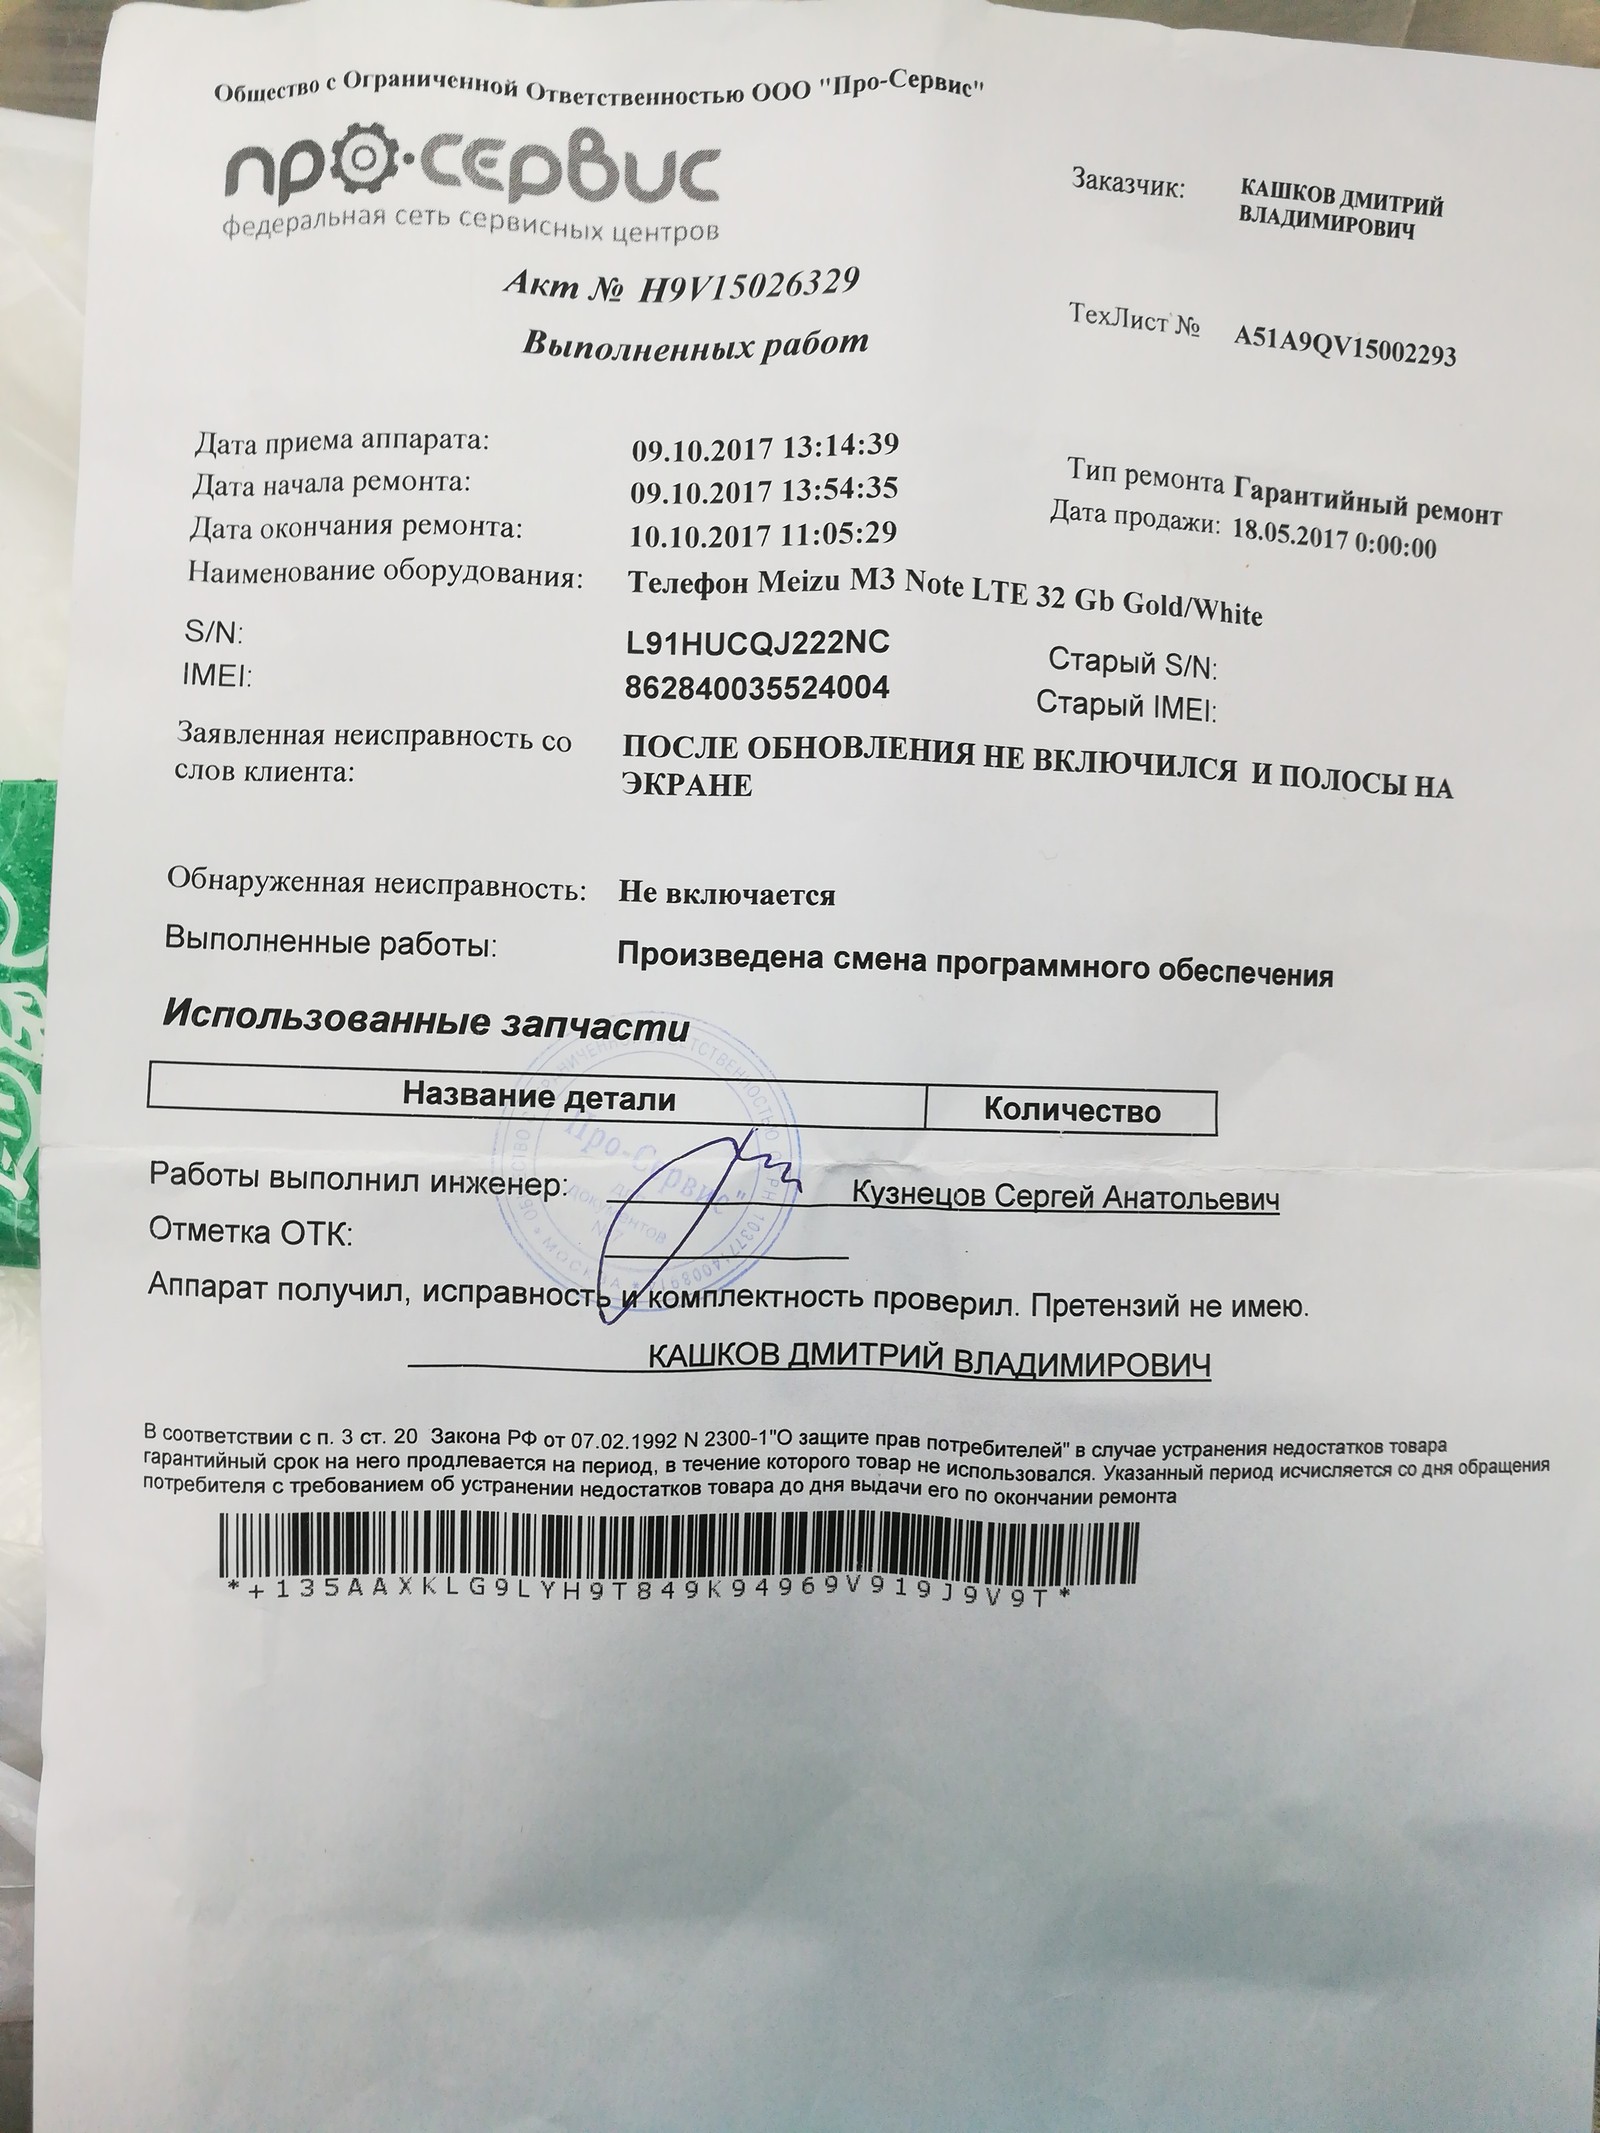 Мфц чехов запись на регистрацию права собственности на дом